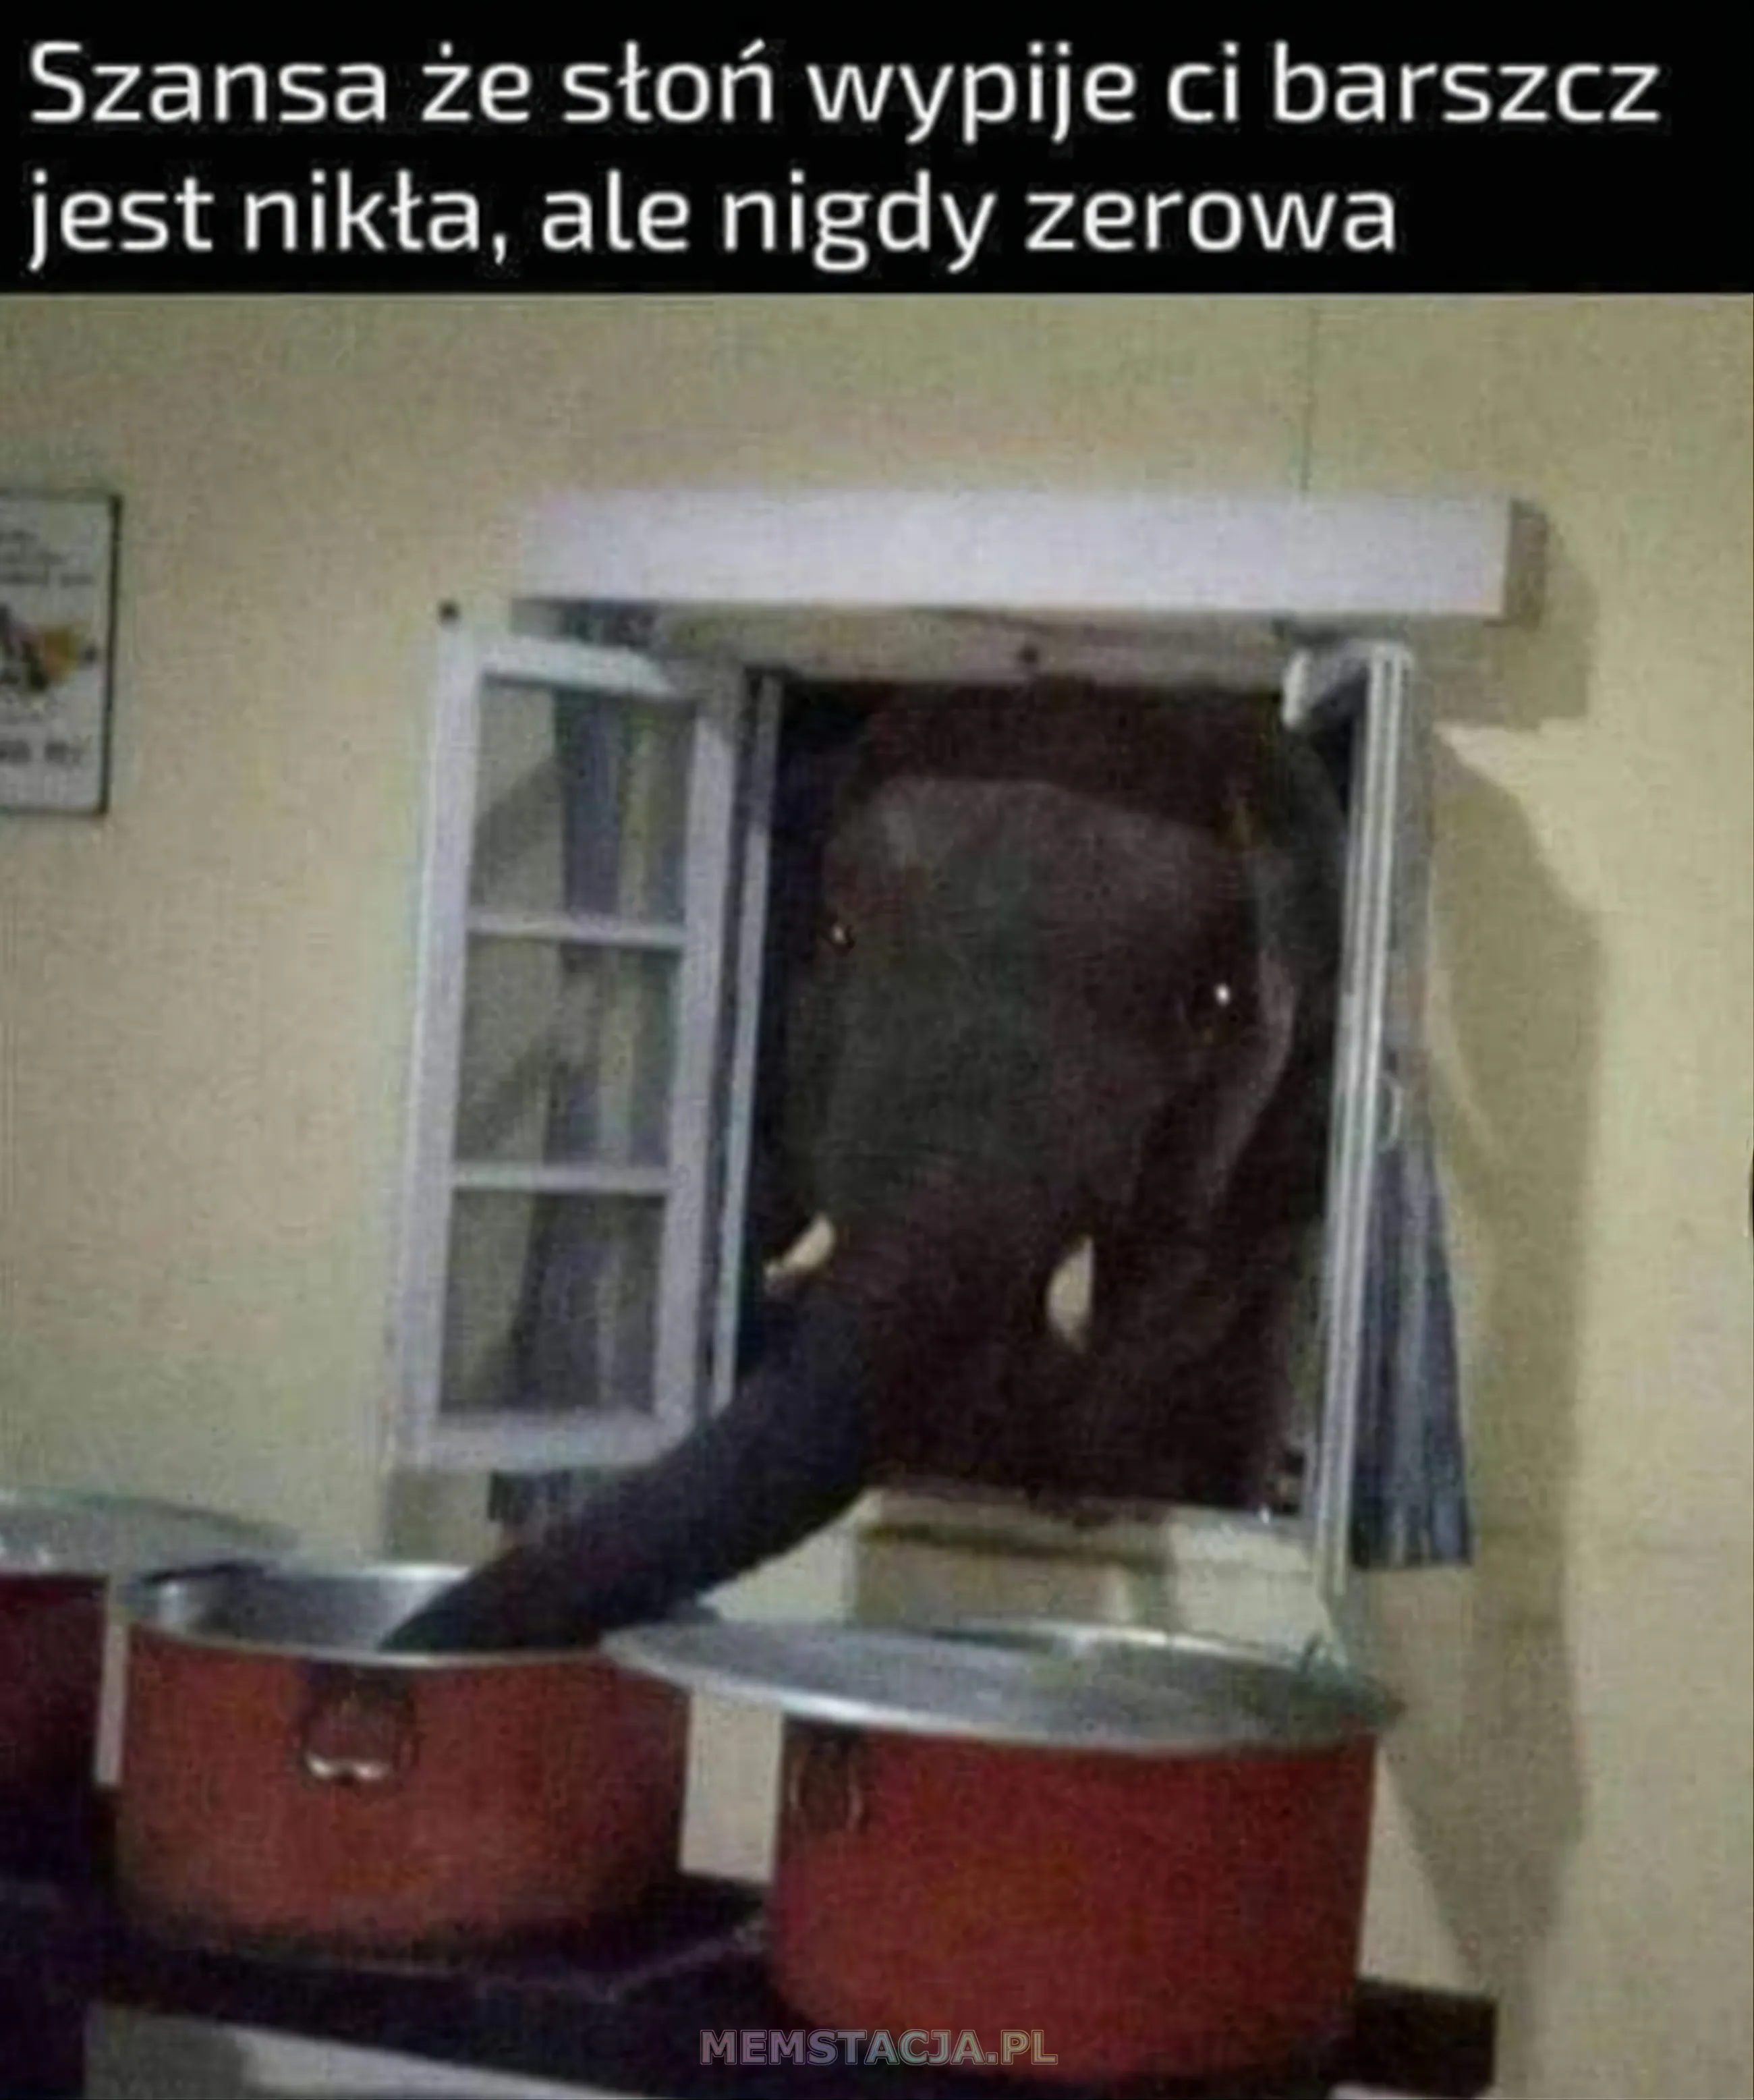 Zdjęcie słonia wyglądającego przez okno i pijącego barszcz: 'Szansa, że słoń wypije ci barszcz jest nikła, ale nigdy zerowa'